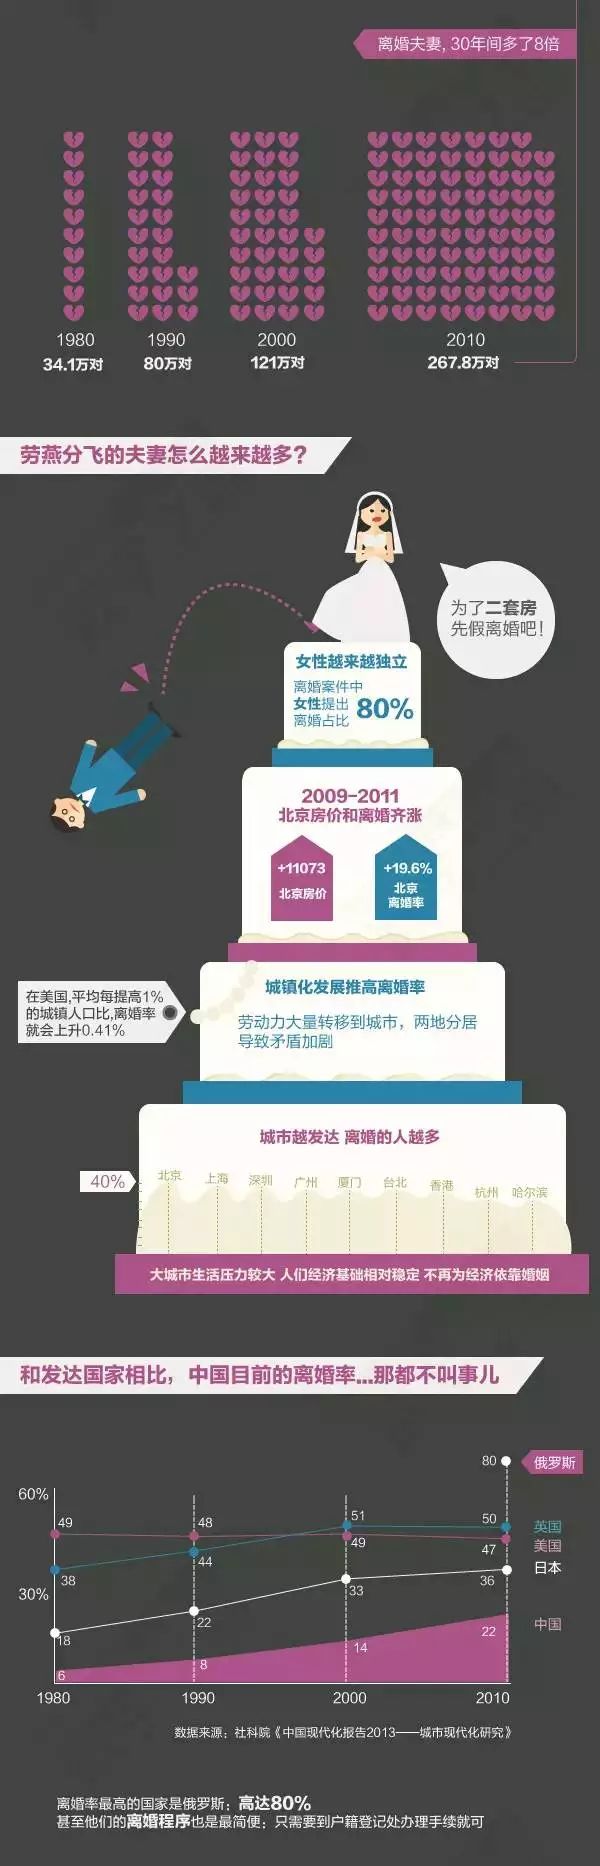 广州婚姻出轨调查_出轨婚姻调查广州事件_广州出轨调查咨询